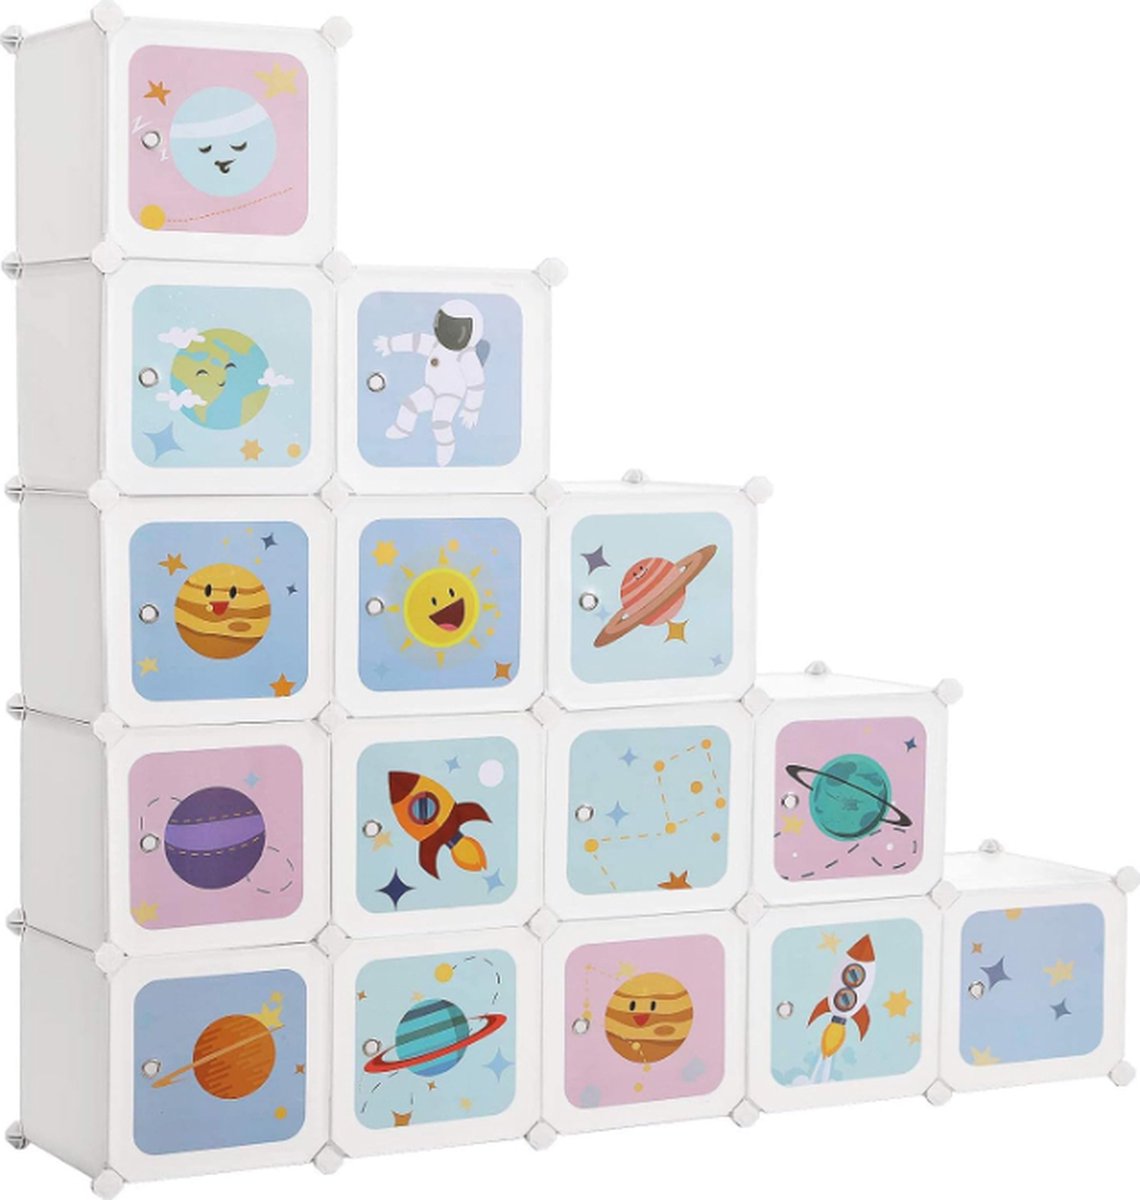 orion store - Opbergkast voor Kinderen met 16 Cubes - 31cm x 153cm x 153cm